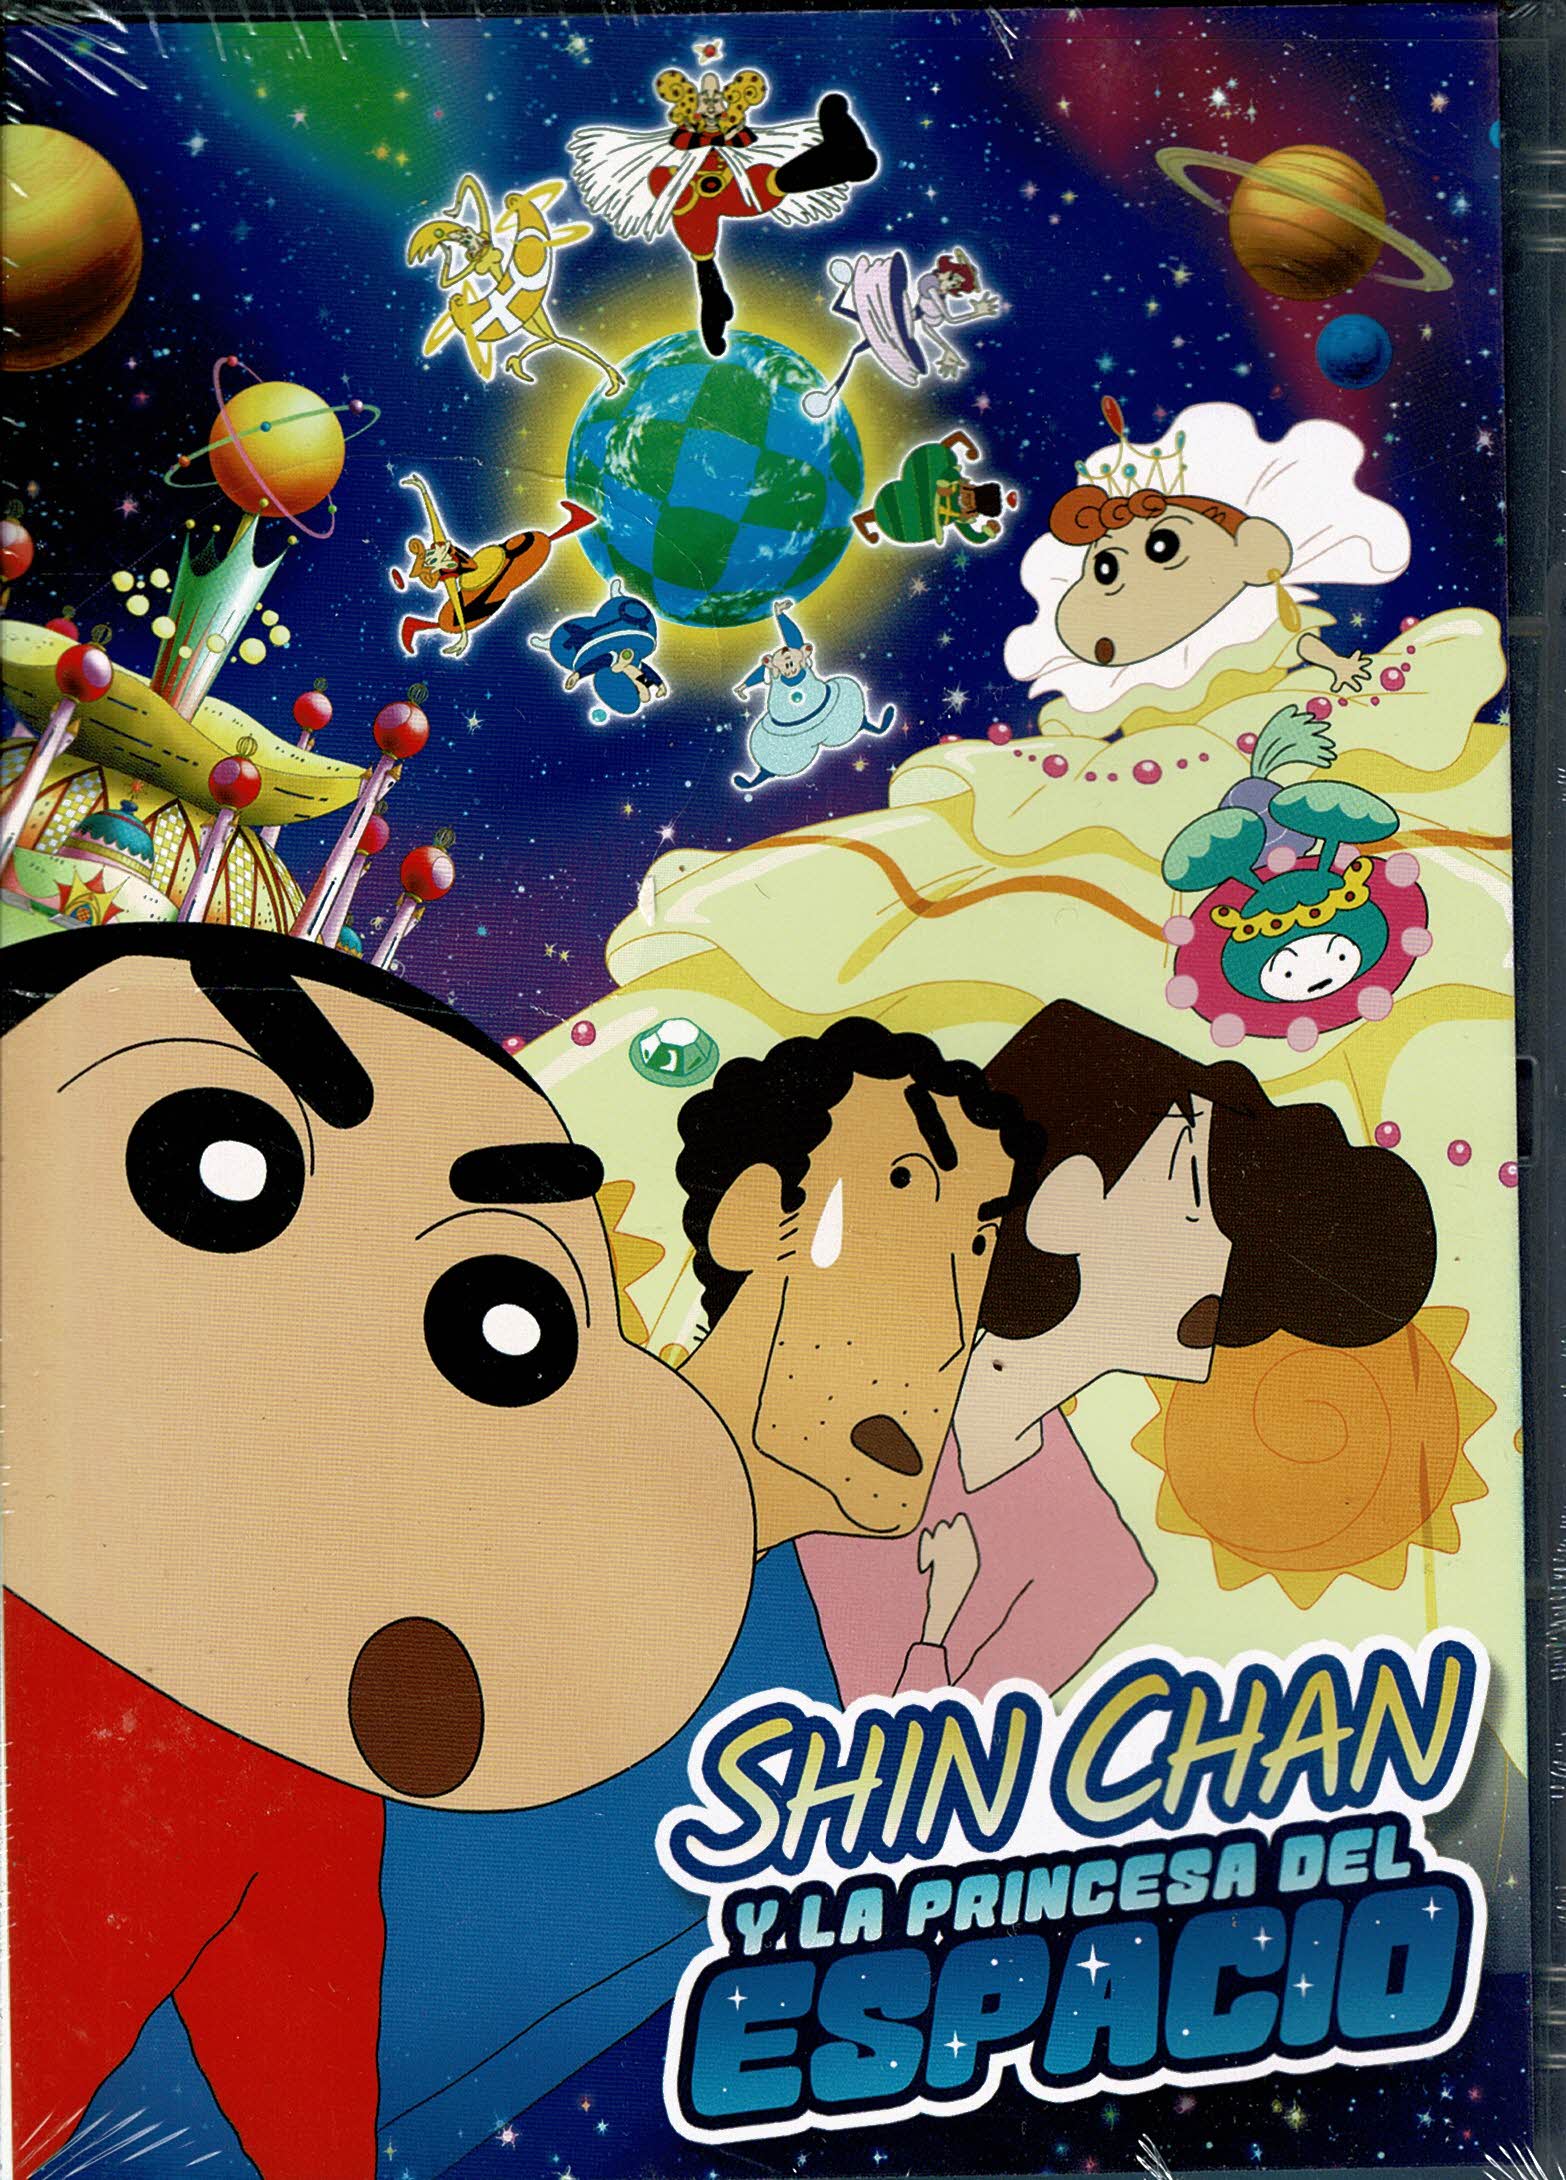 Shinchan: La Princesa Del Espacio